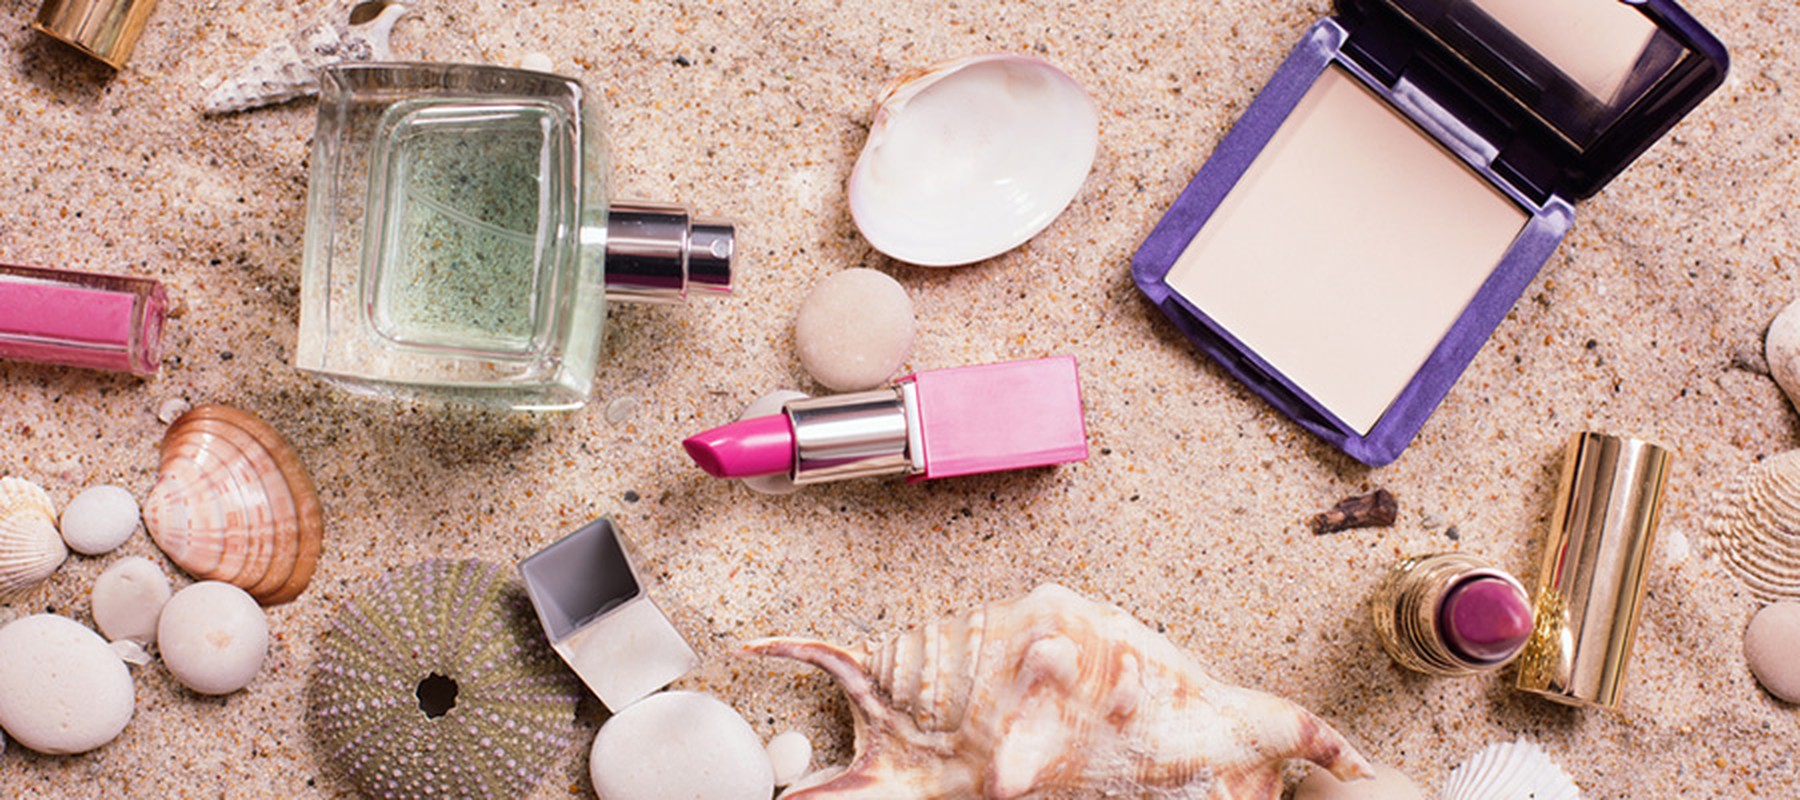 Renueva tu maquillaje y perfumes para el verano con estos útiles consejos